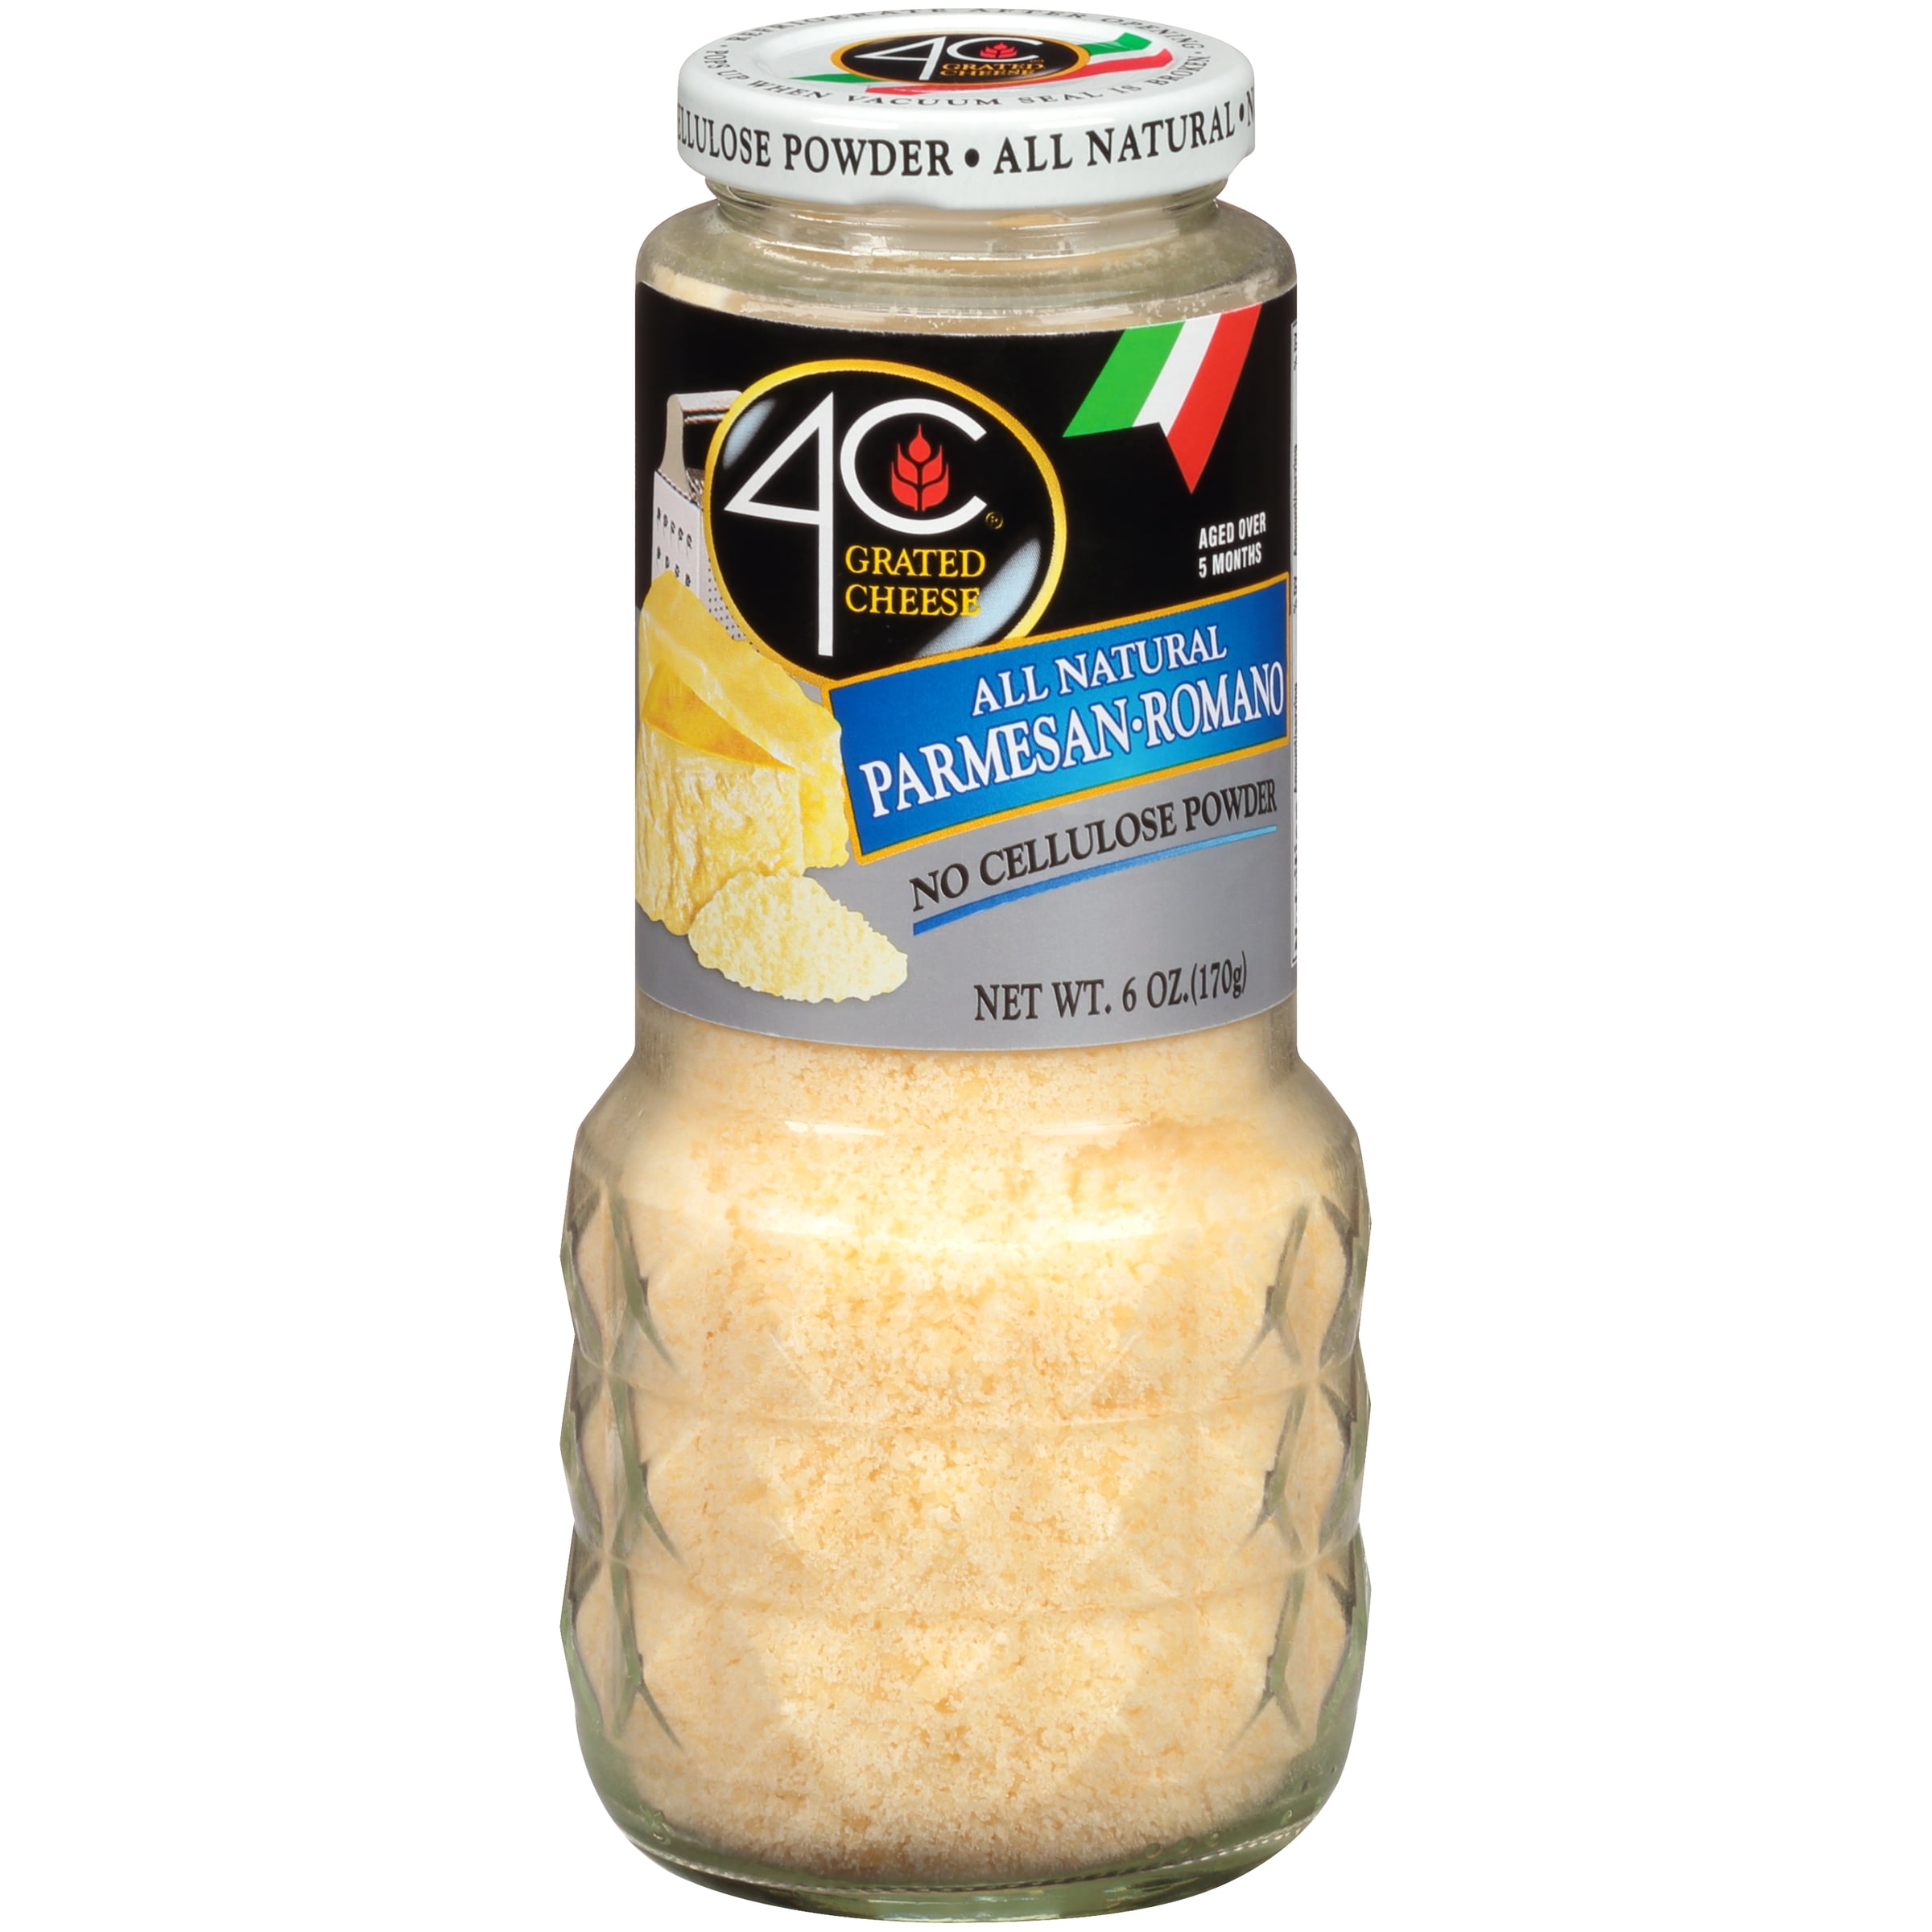 4C 100% Natural Parmesan/Romano Cheese, 6 oz